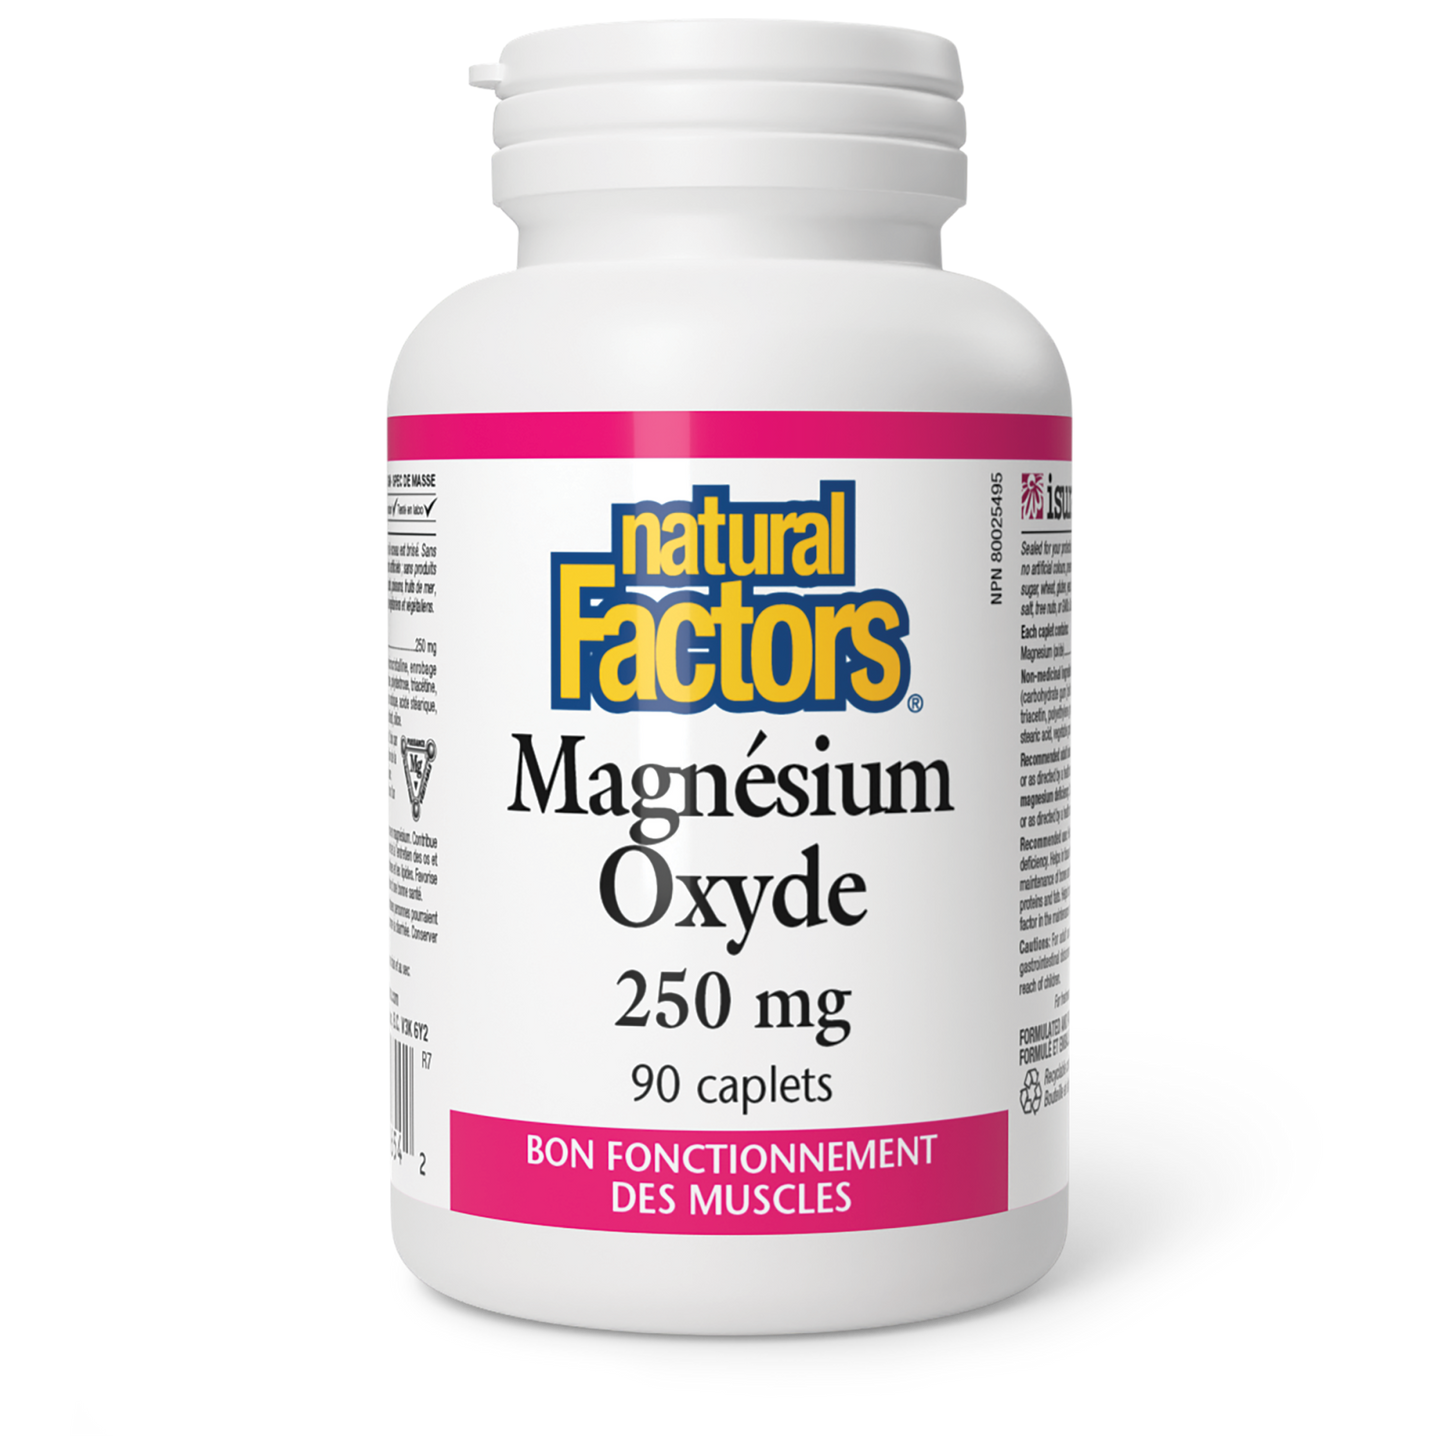 Magnésium Oxyde 250 mg, Natural Factors|v|image|1654